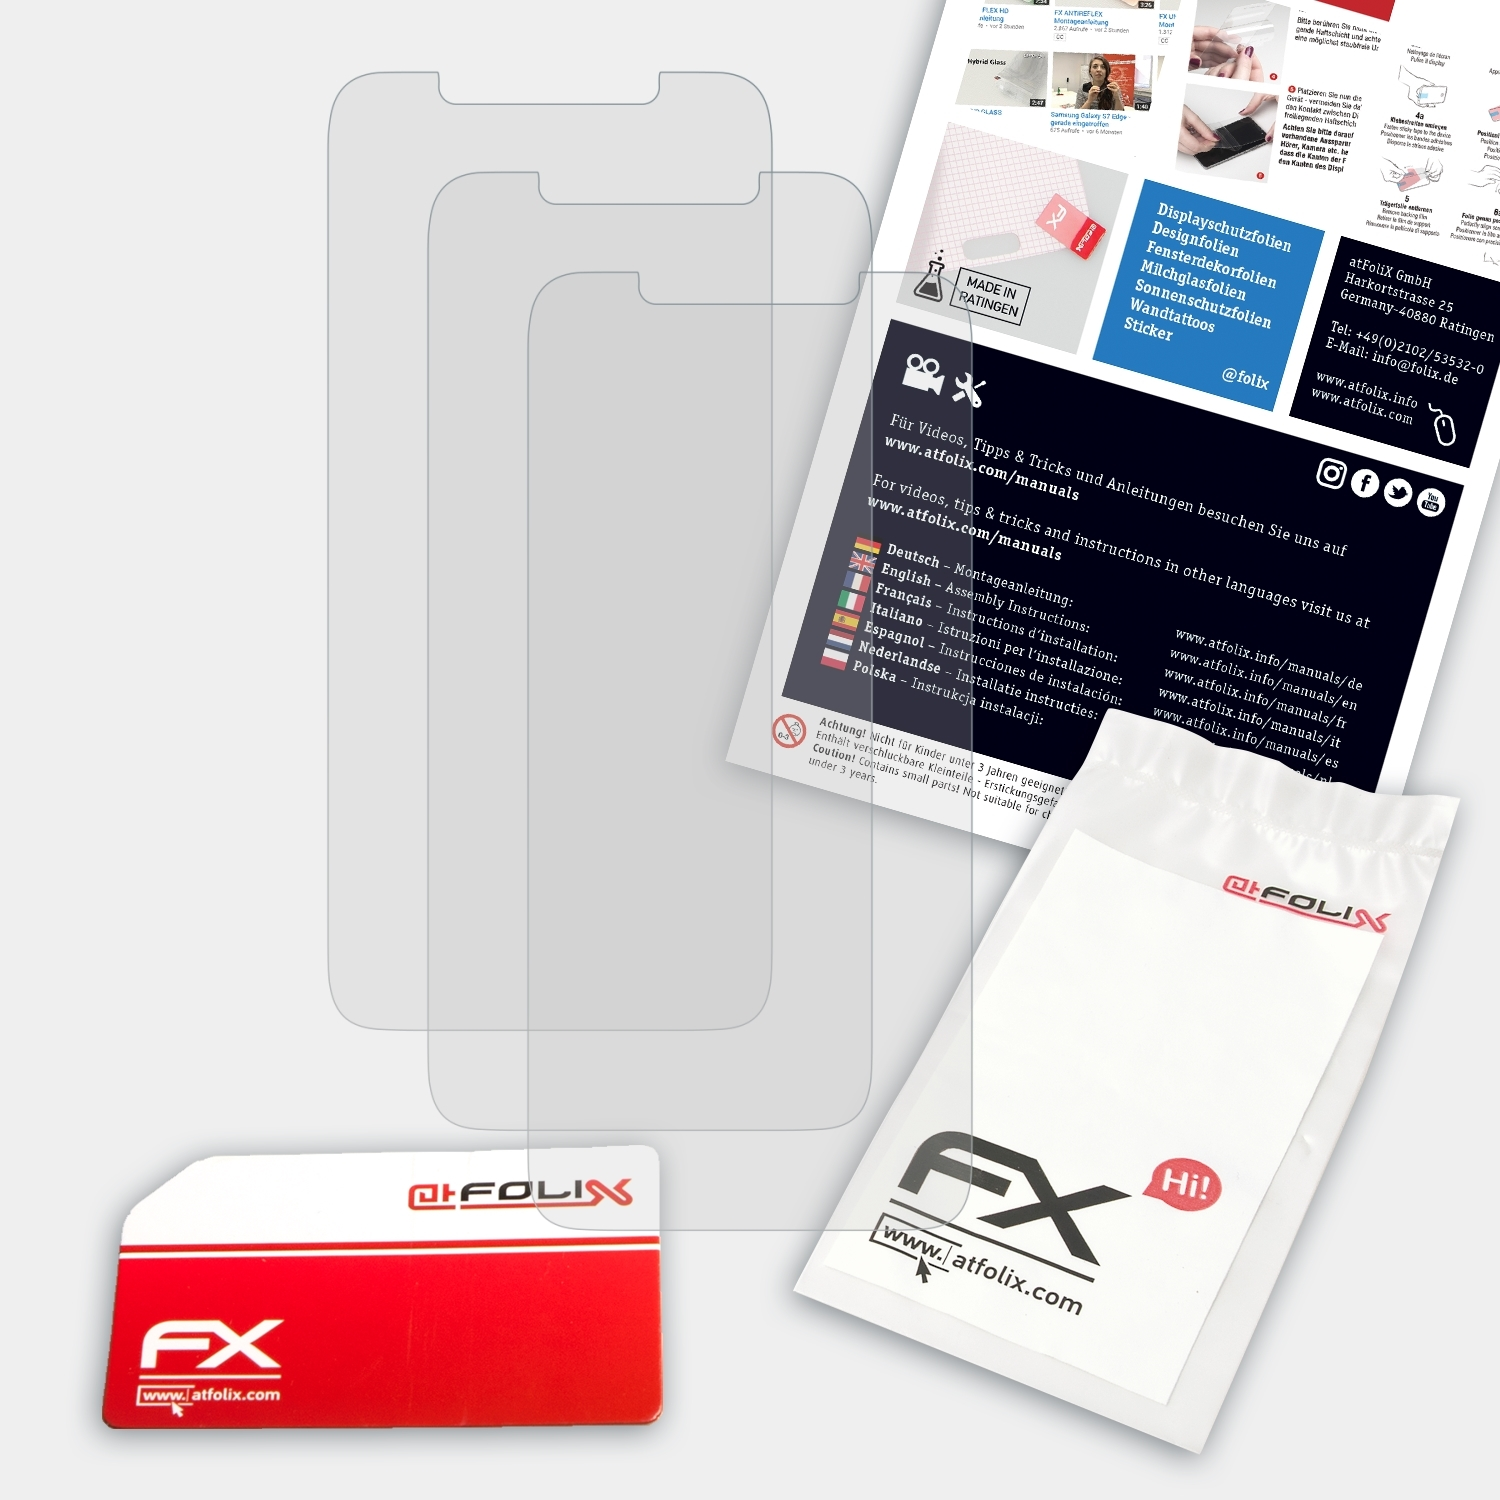 ATFOLIX 3x FX-Antireflex Displayschutz(für Lenovo S5 Pro)